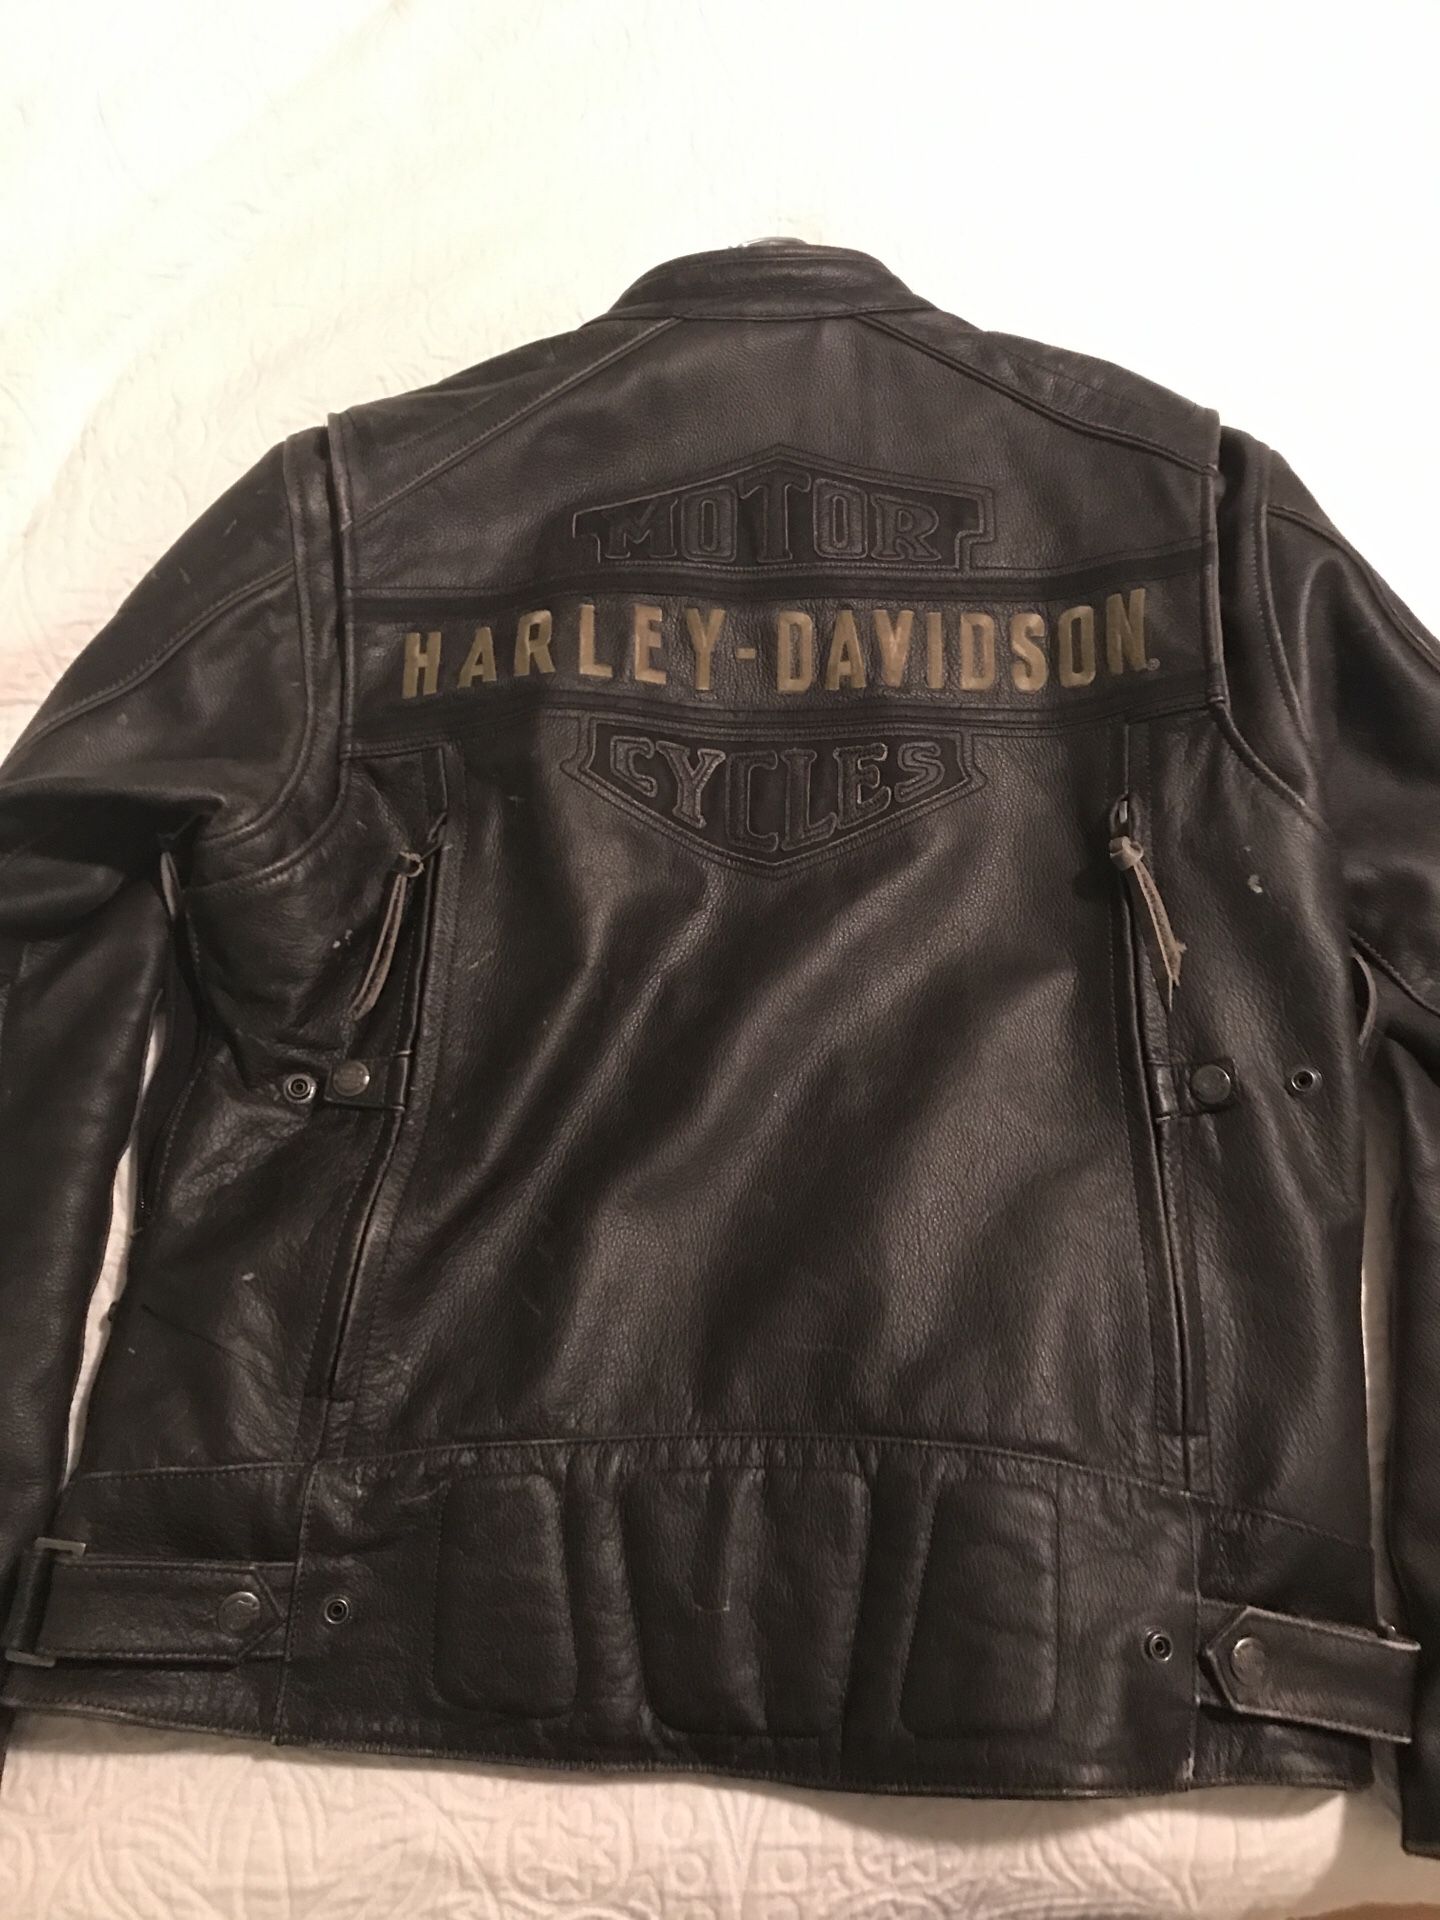 Harley Davidson biker leather jacket - Large